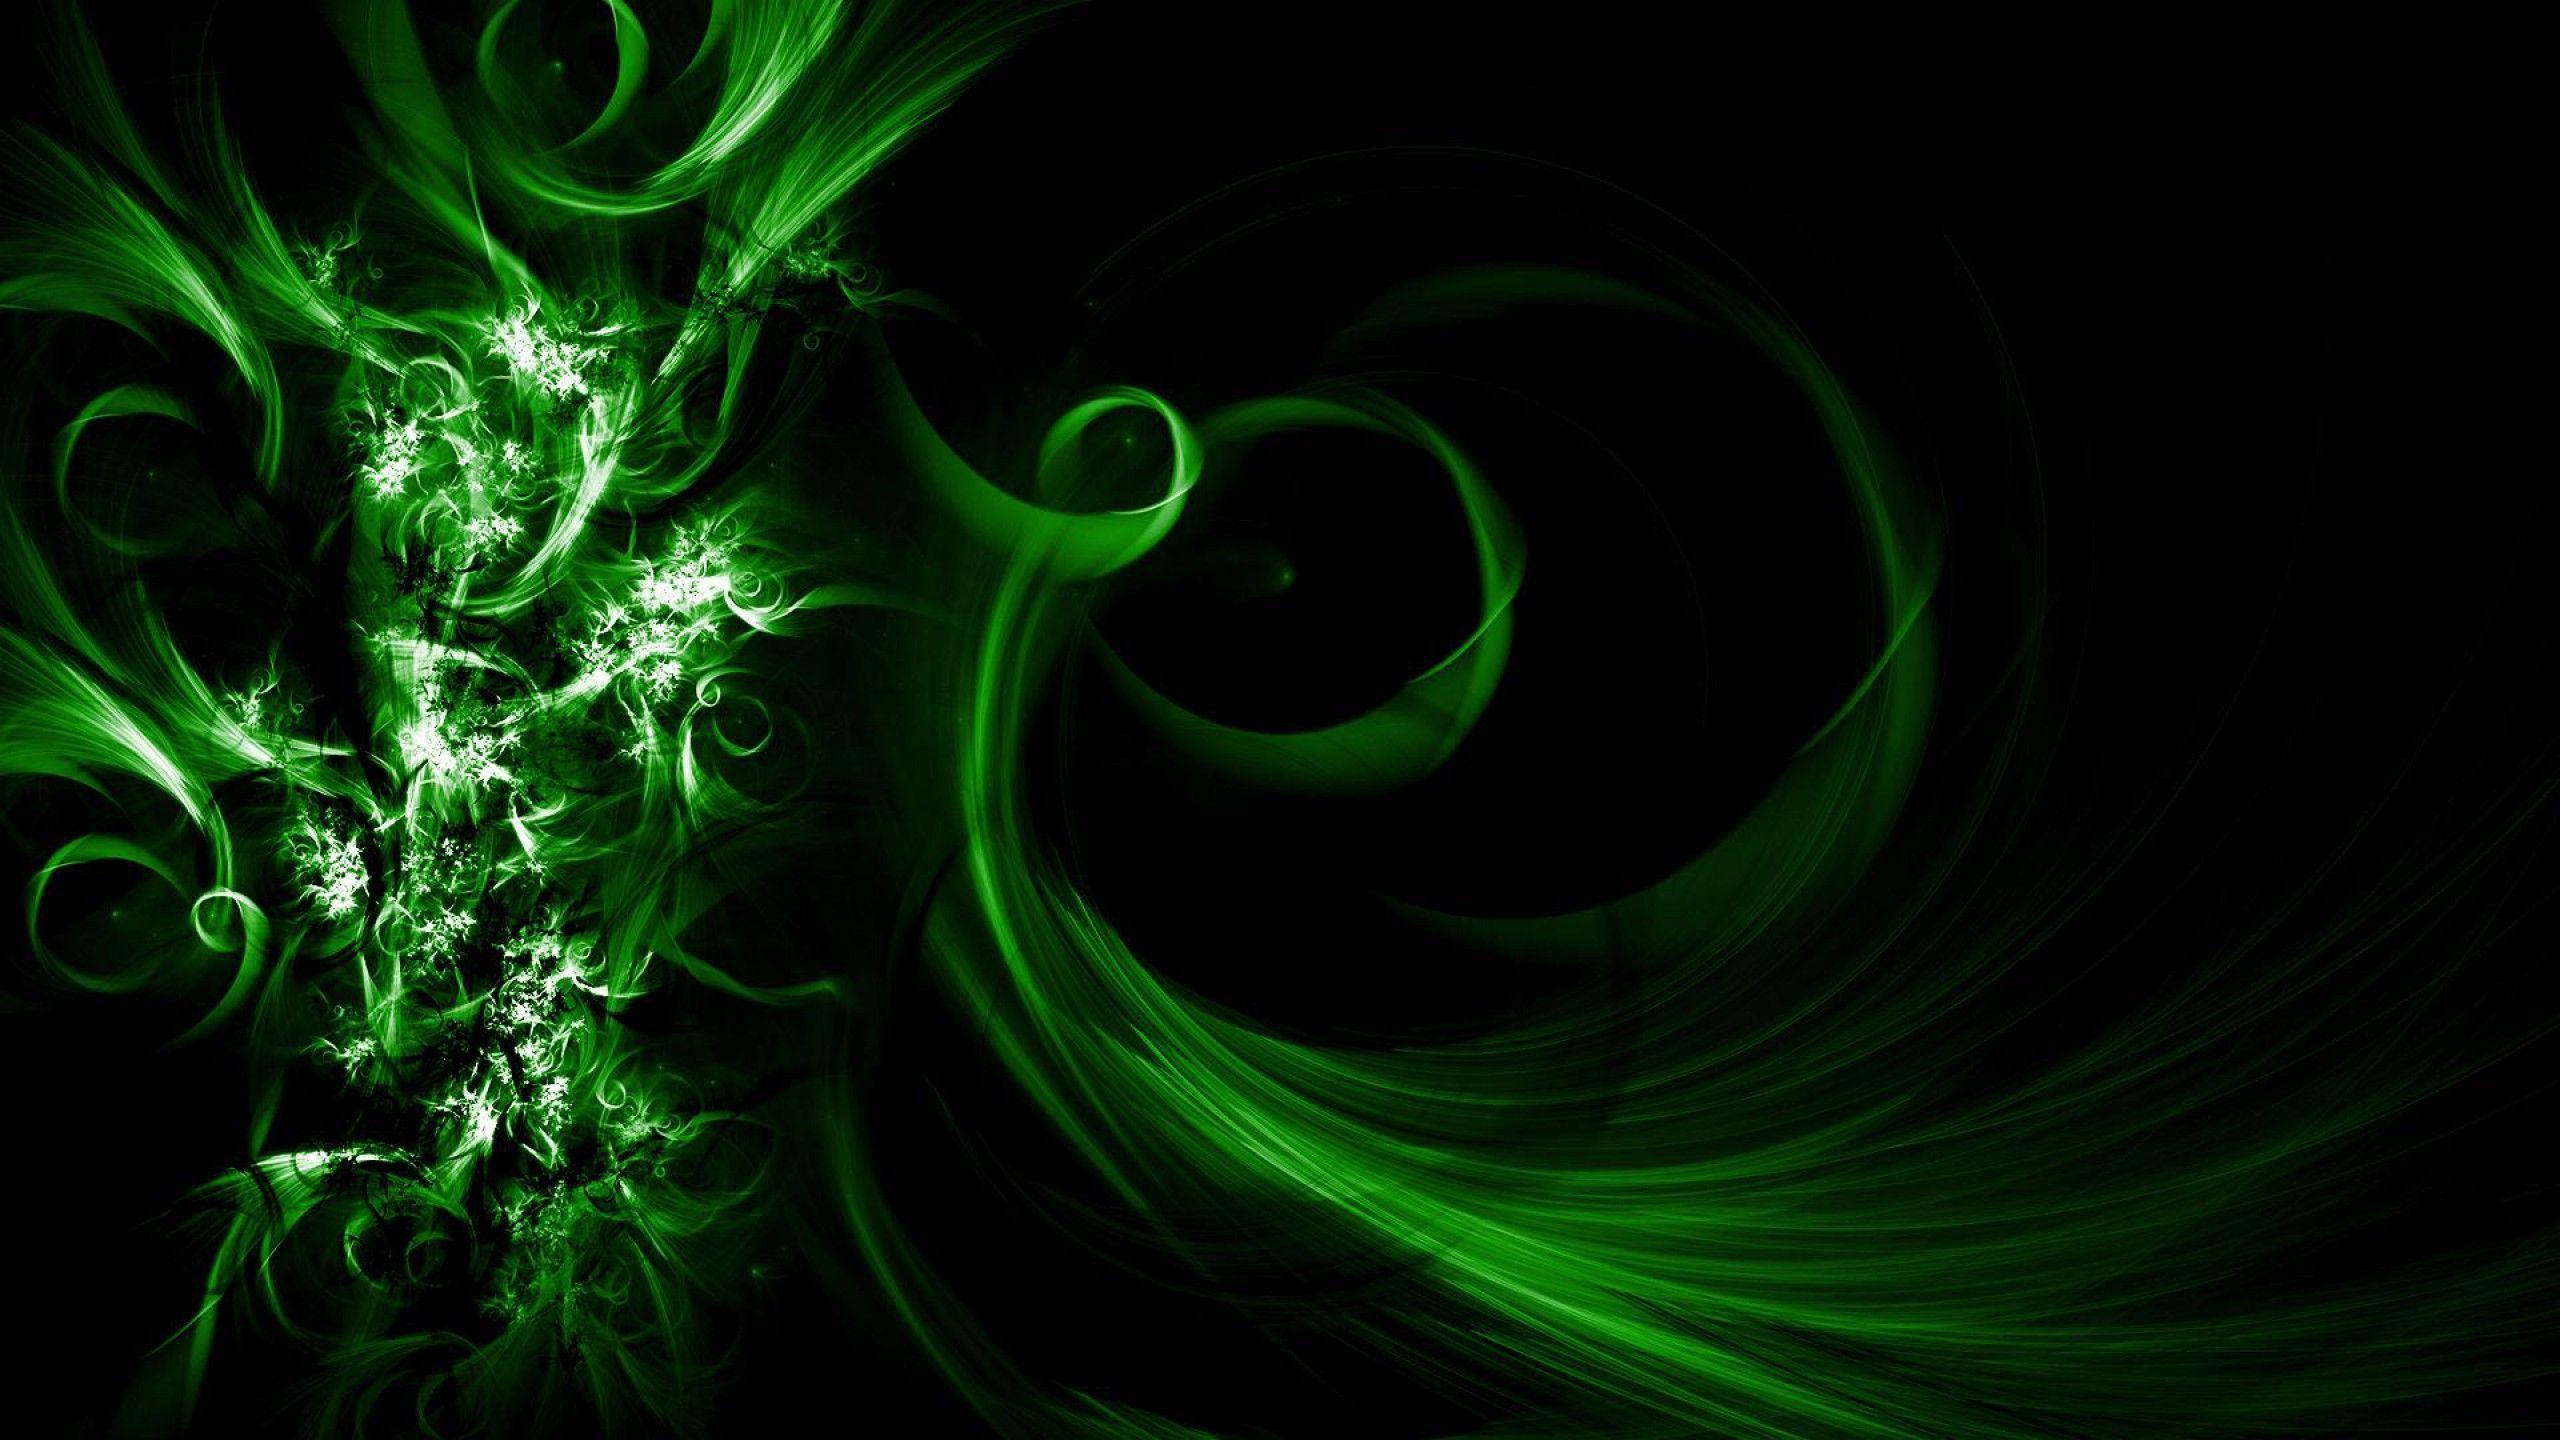 Dark Green Wallpapers - Top Free Dark Green Backgrounds ...